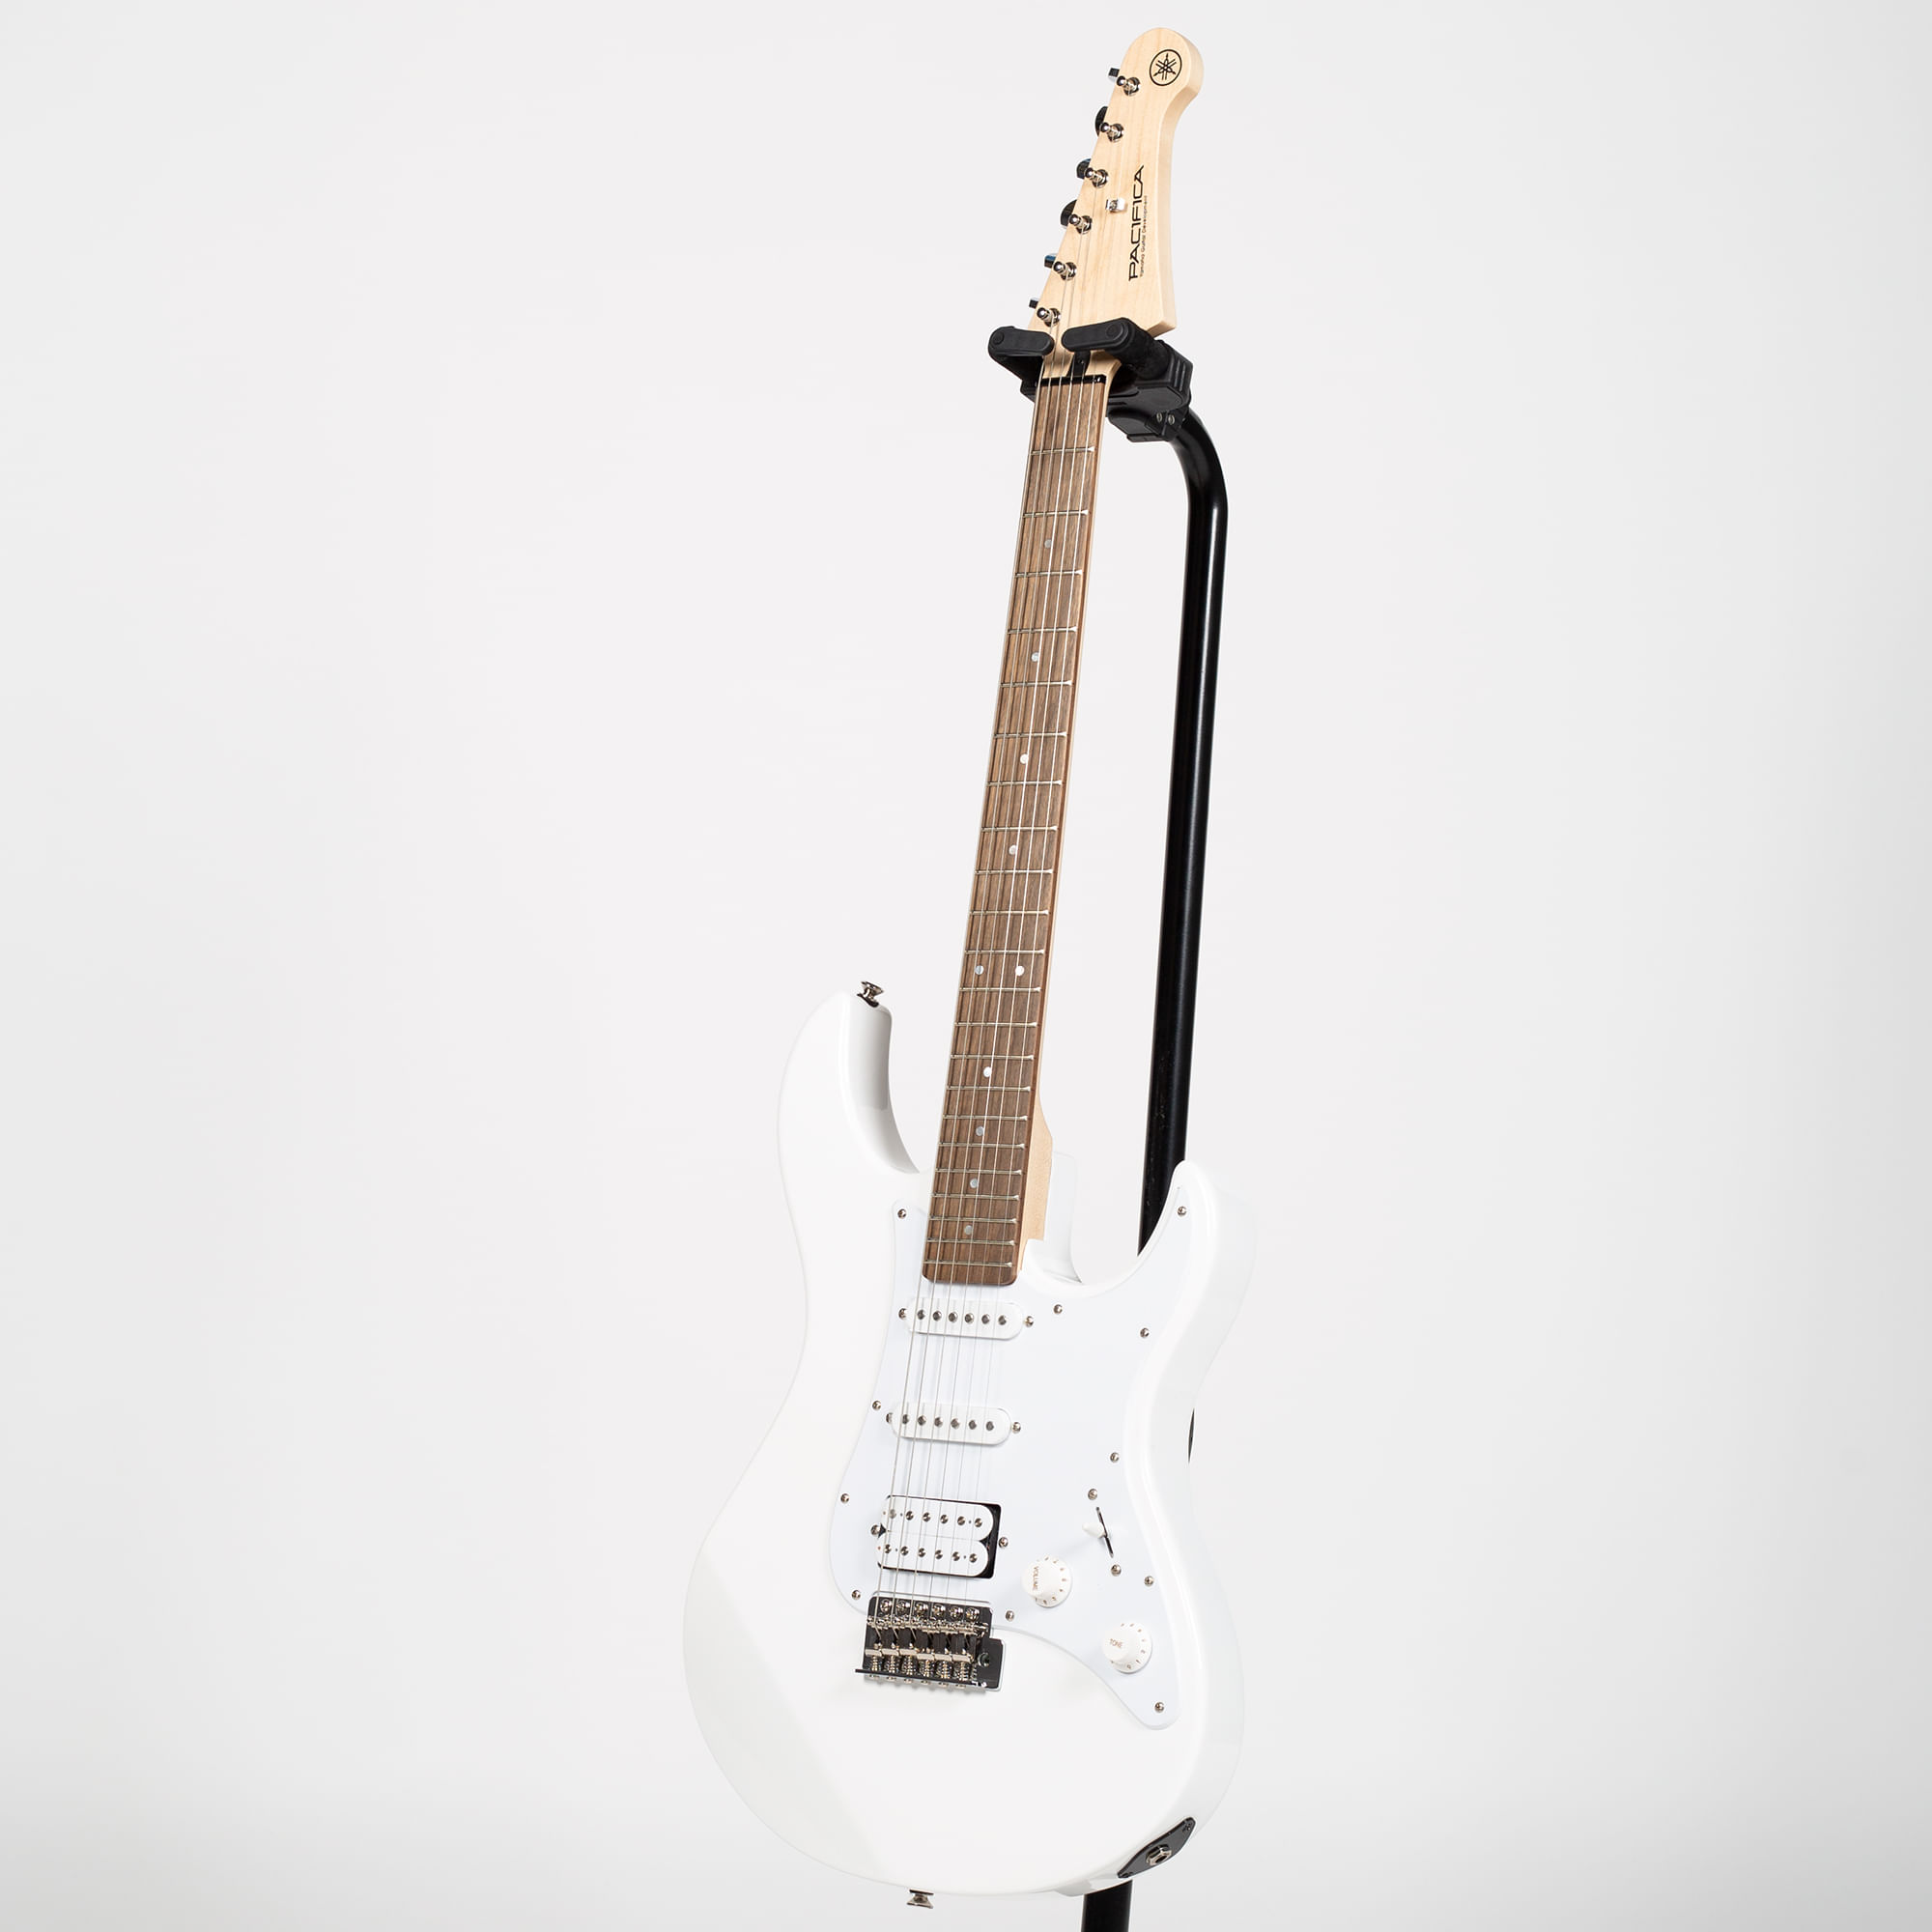 Yamaha PAC012 Double Cutaway Electric Guitar - White